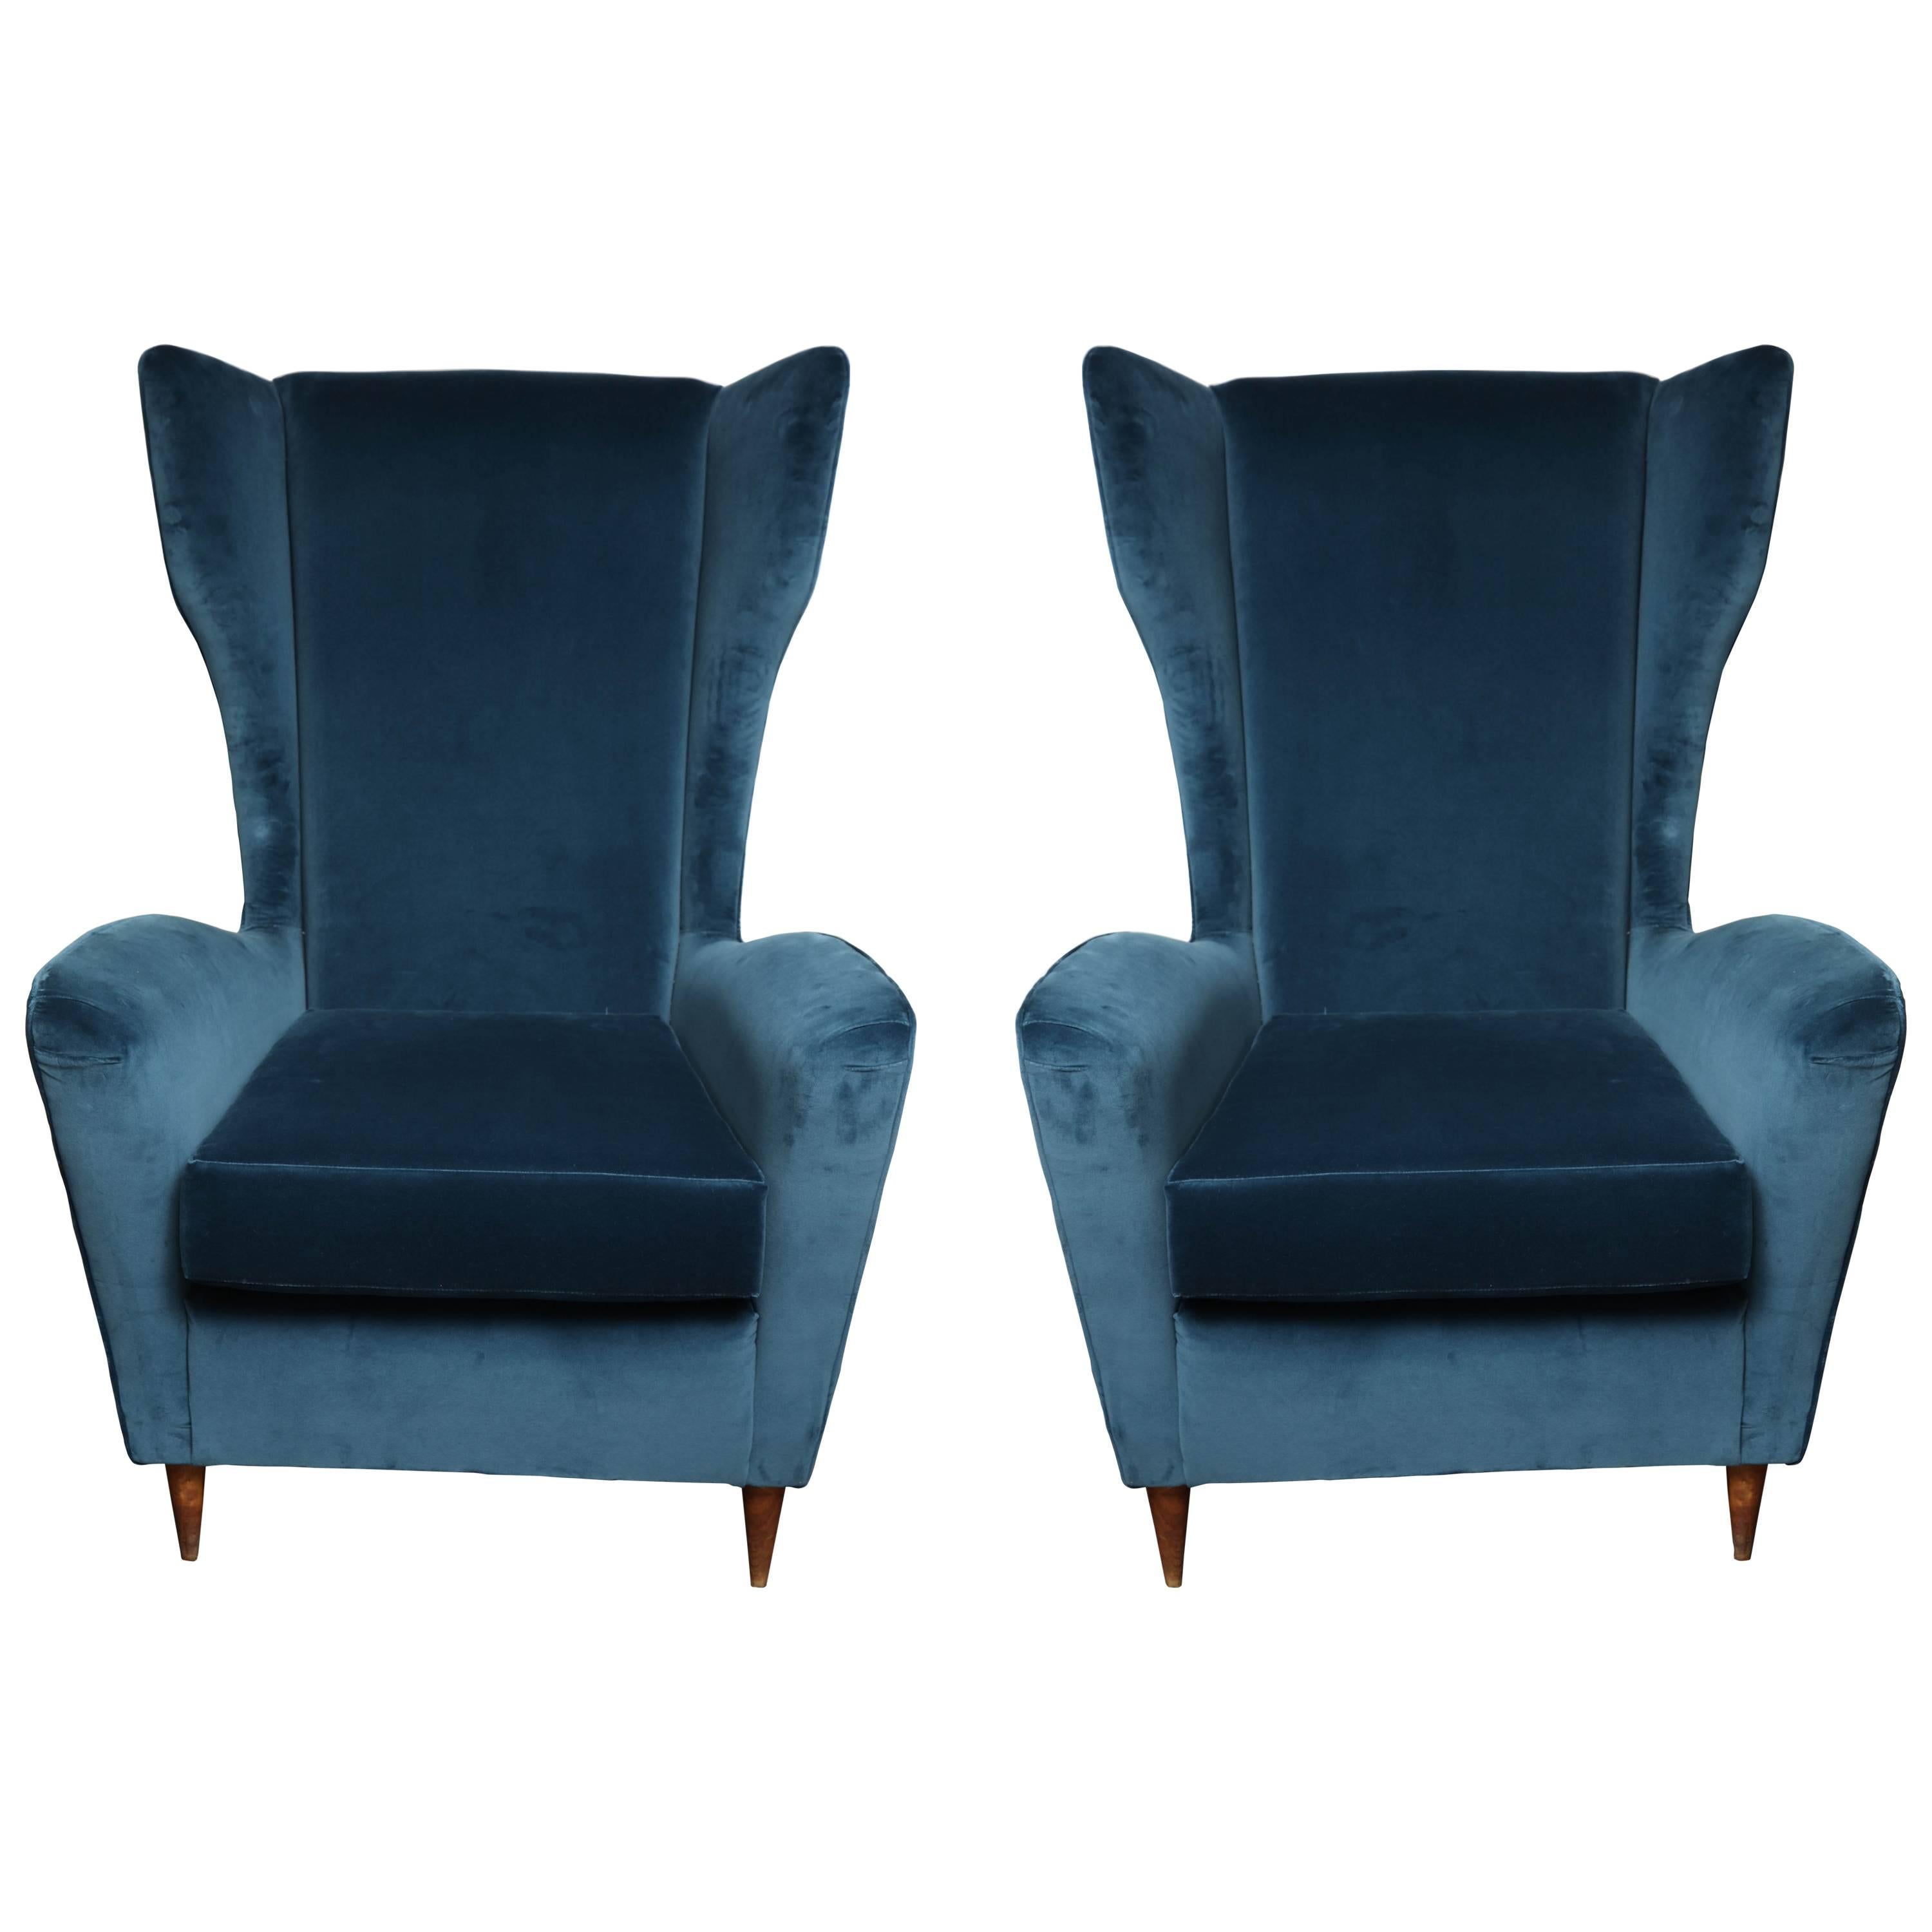 Vintage Italian Modern Wingback Chairs in Blue Velvet